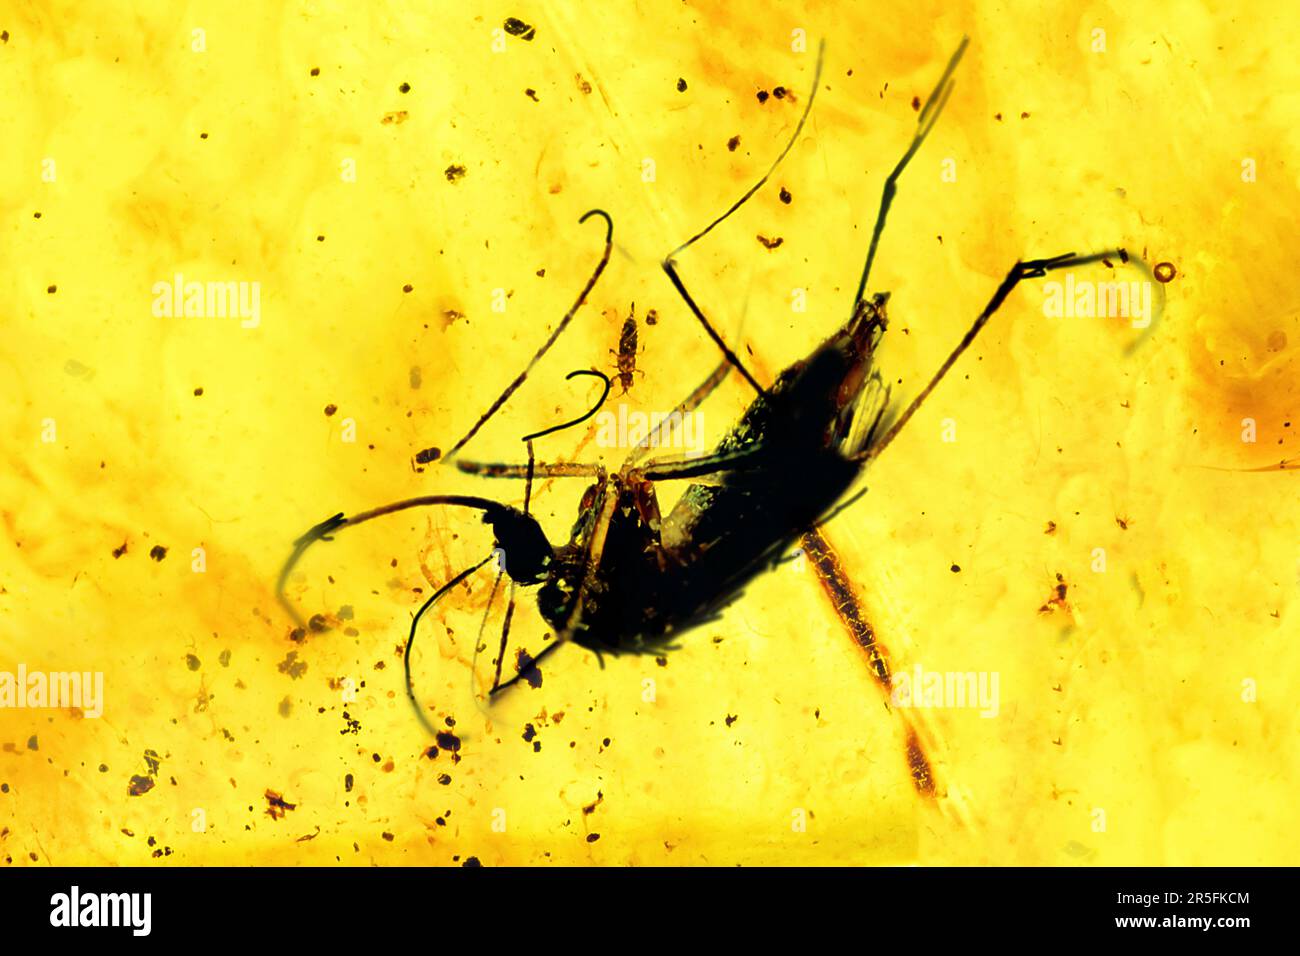 Ambra con insetto preistorico conservato, zanzara con sangue o DNA conservato in ambra Foto Stock